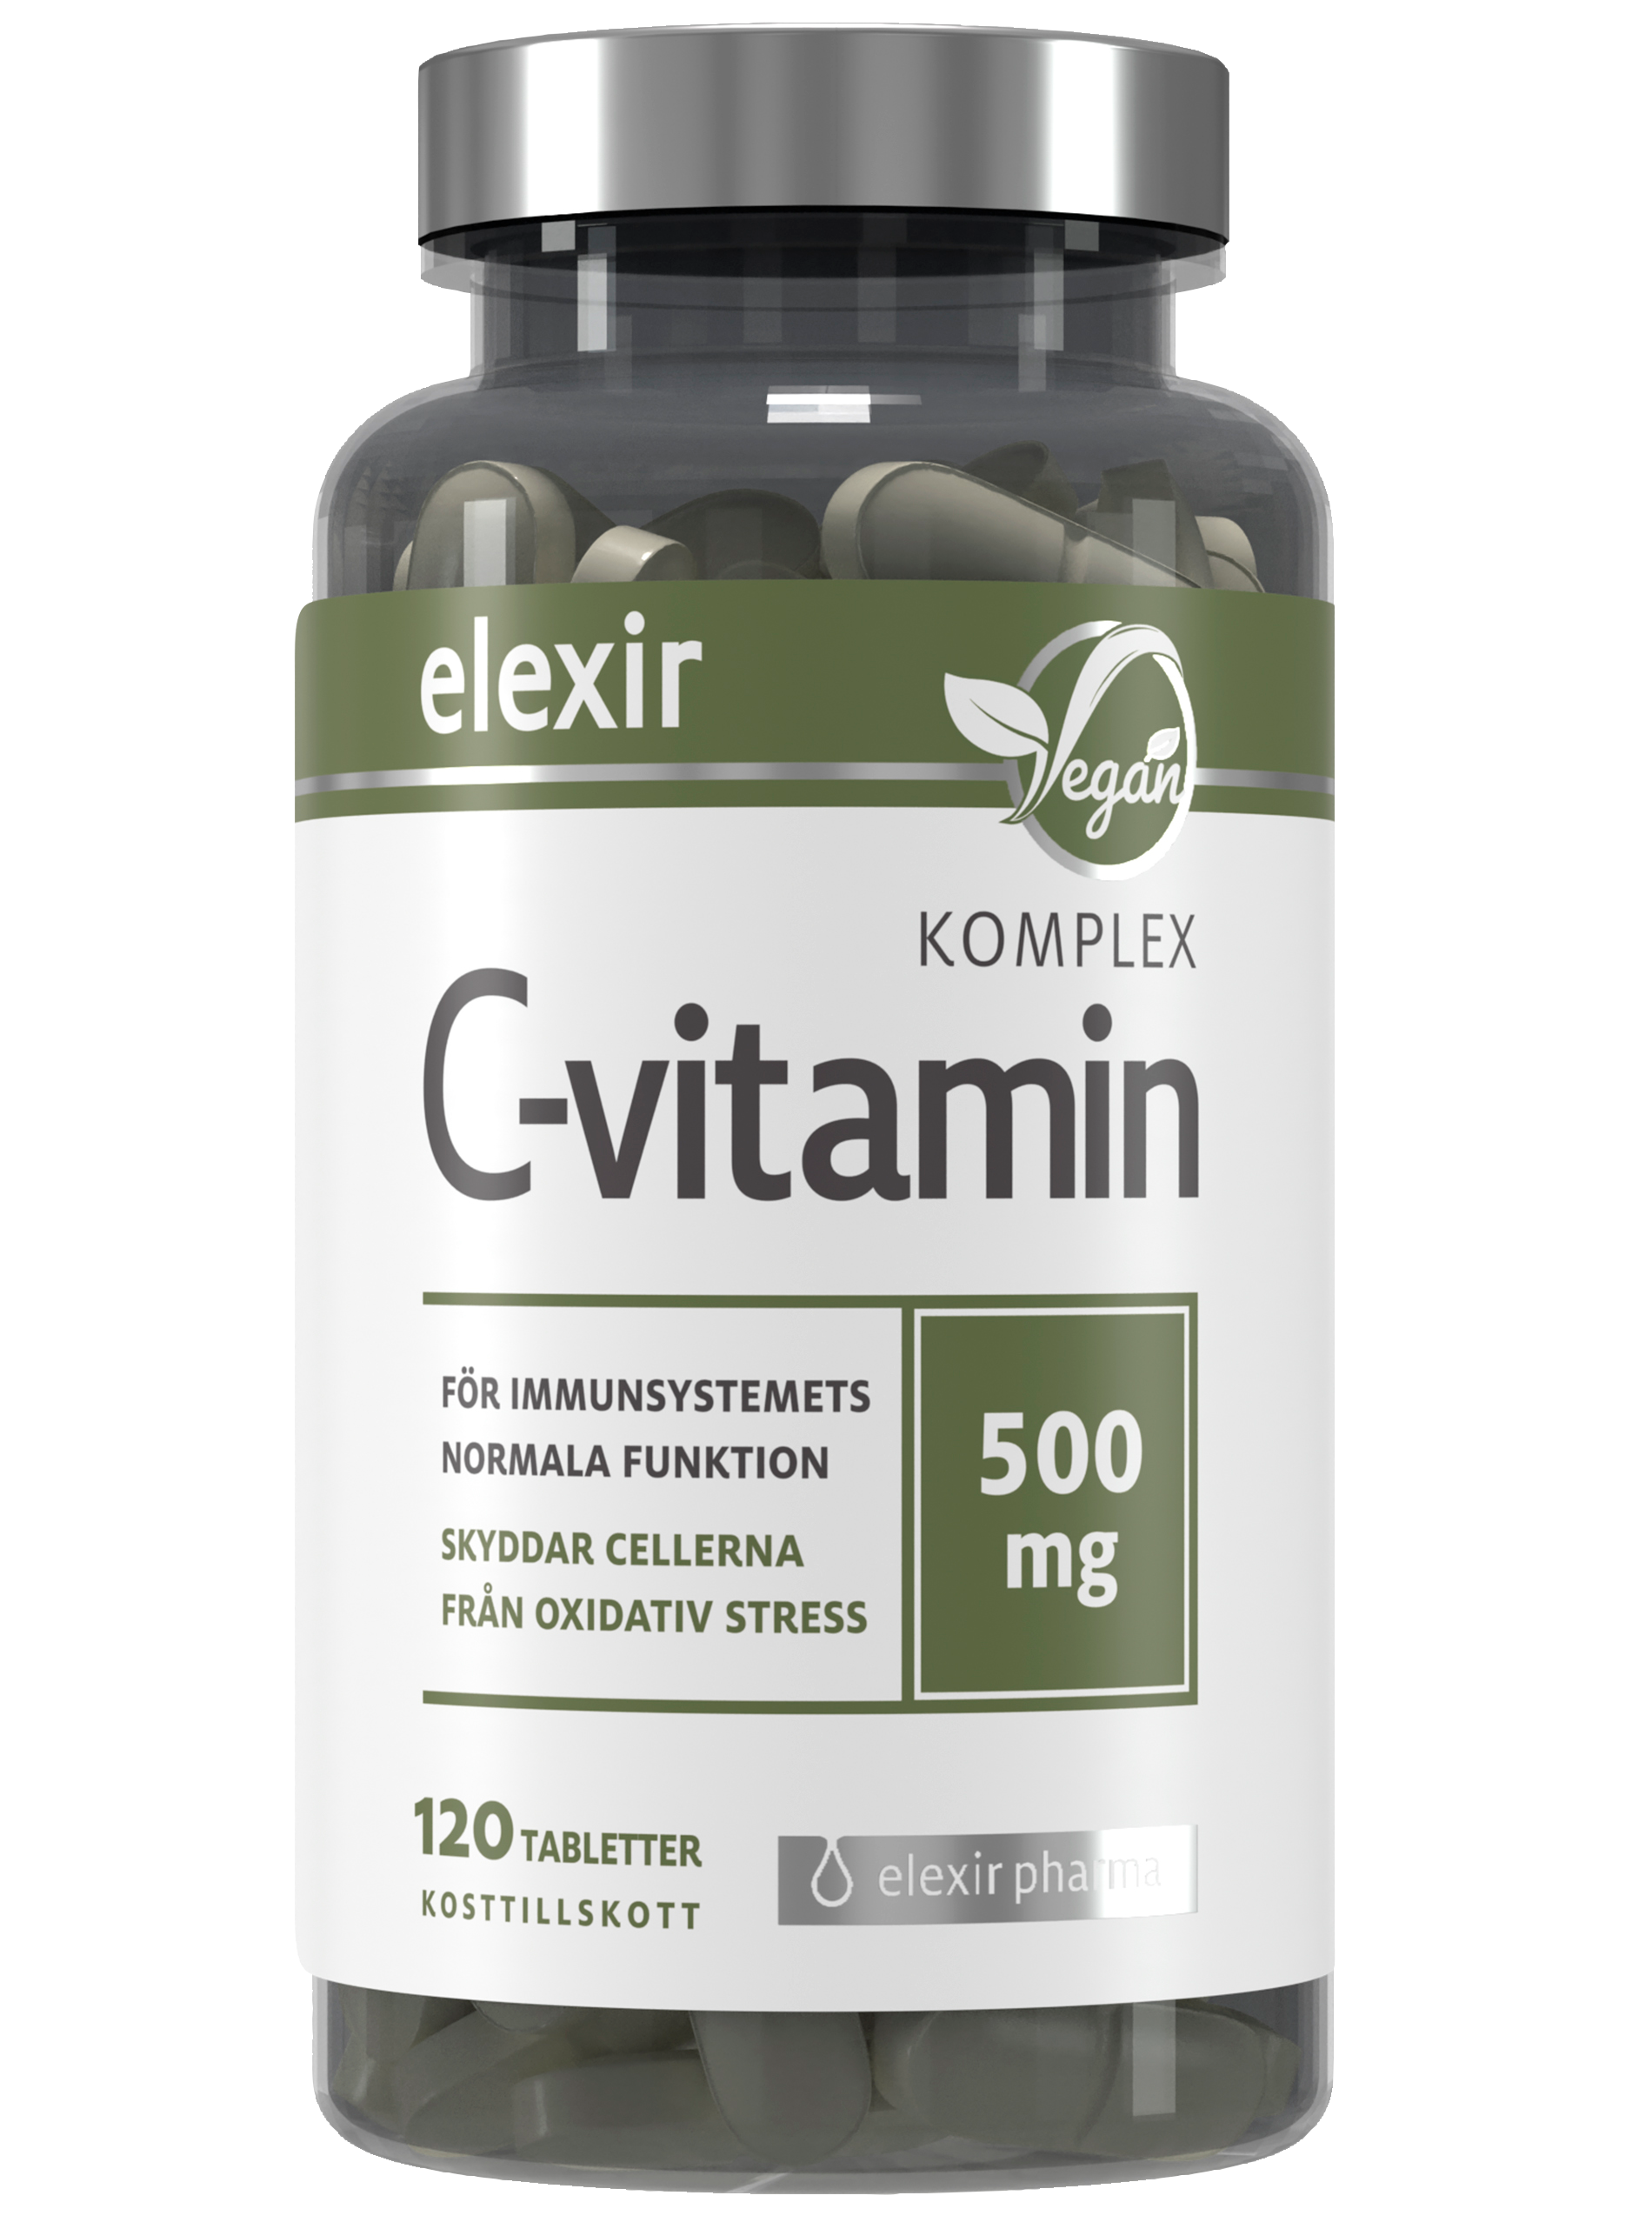 Elexir C vitamin för immunsystemets normala funktion